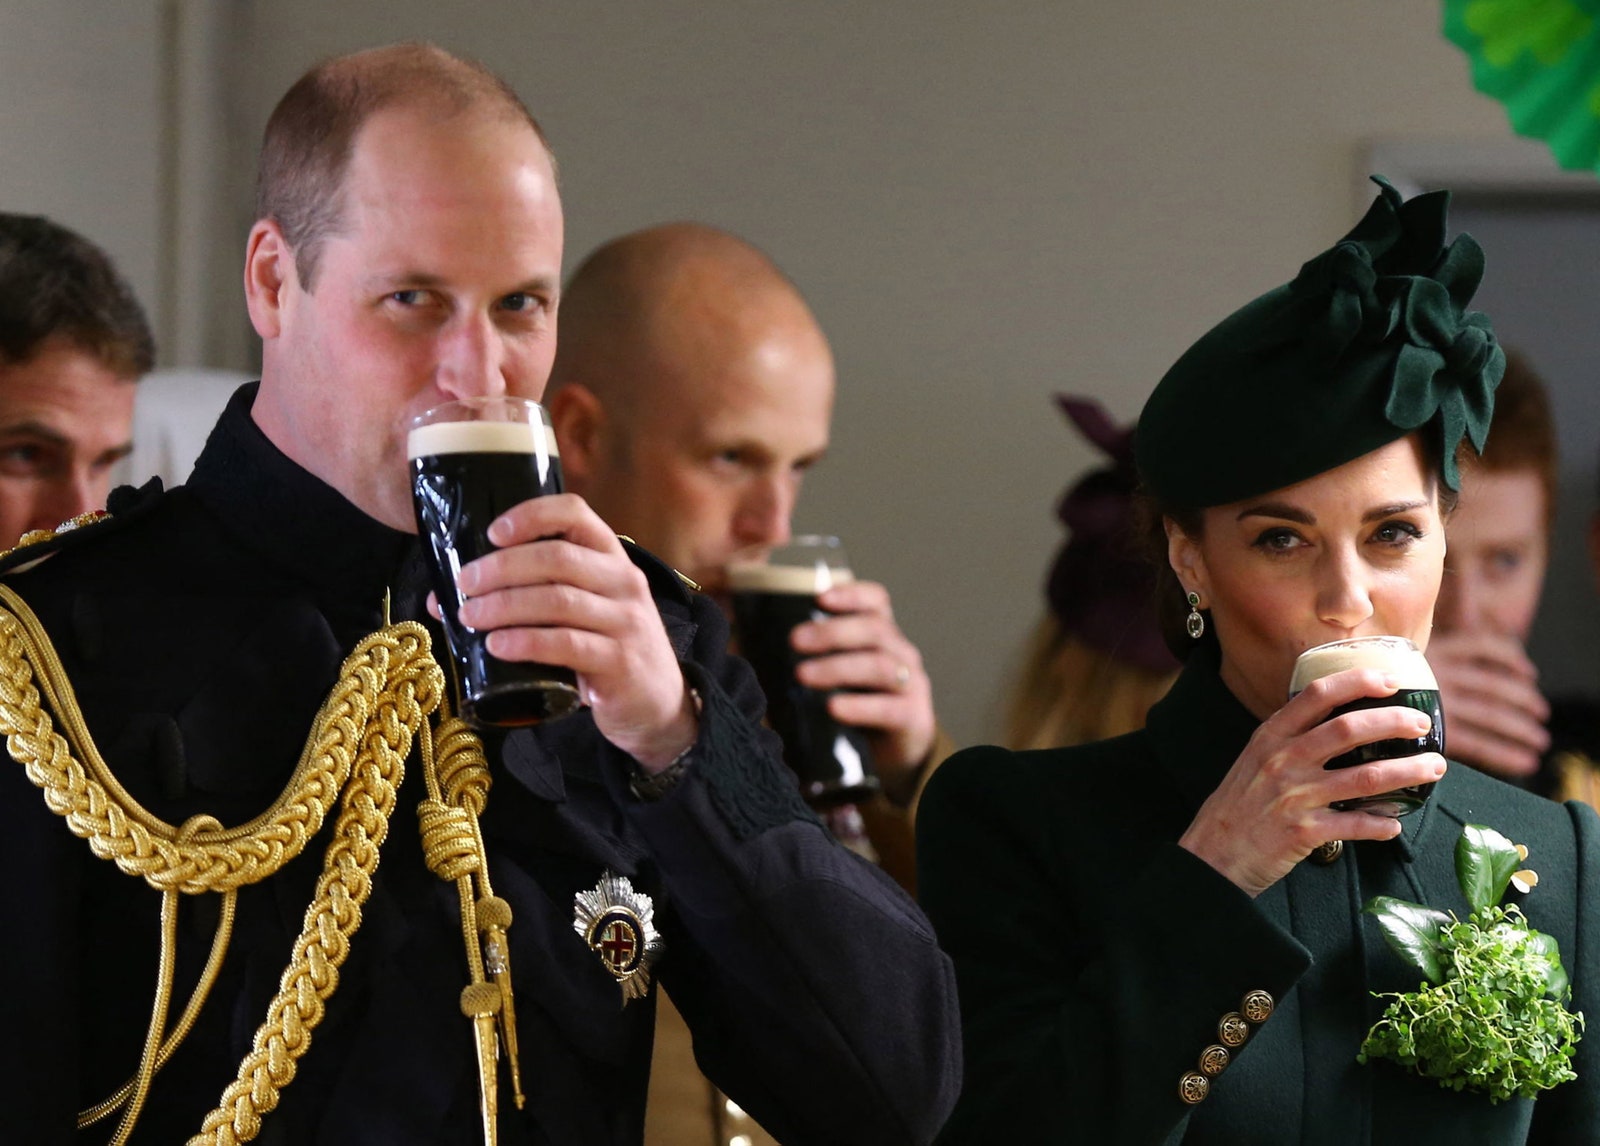 התמונה עשויה להכיל את גביע הנסיך וויליאם דוכס קיימברידג' אדם מבוגר משקה אלכוהול ביגוד כובע ושתייה